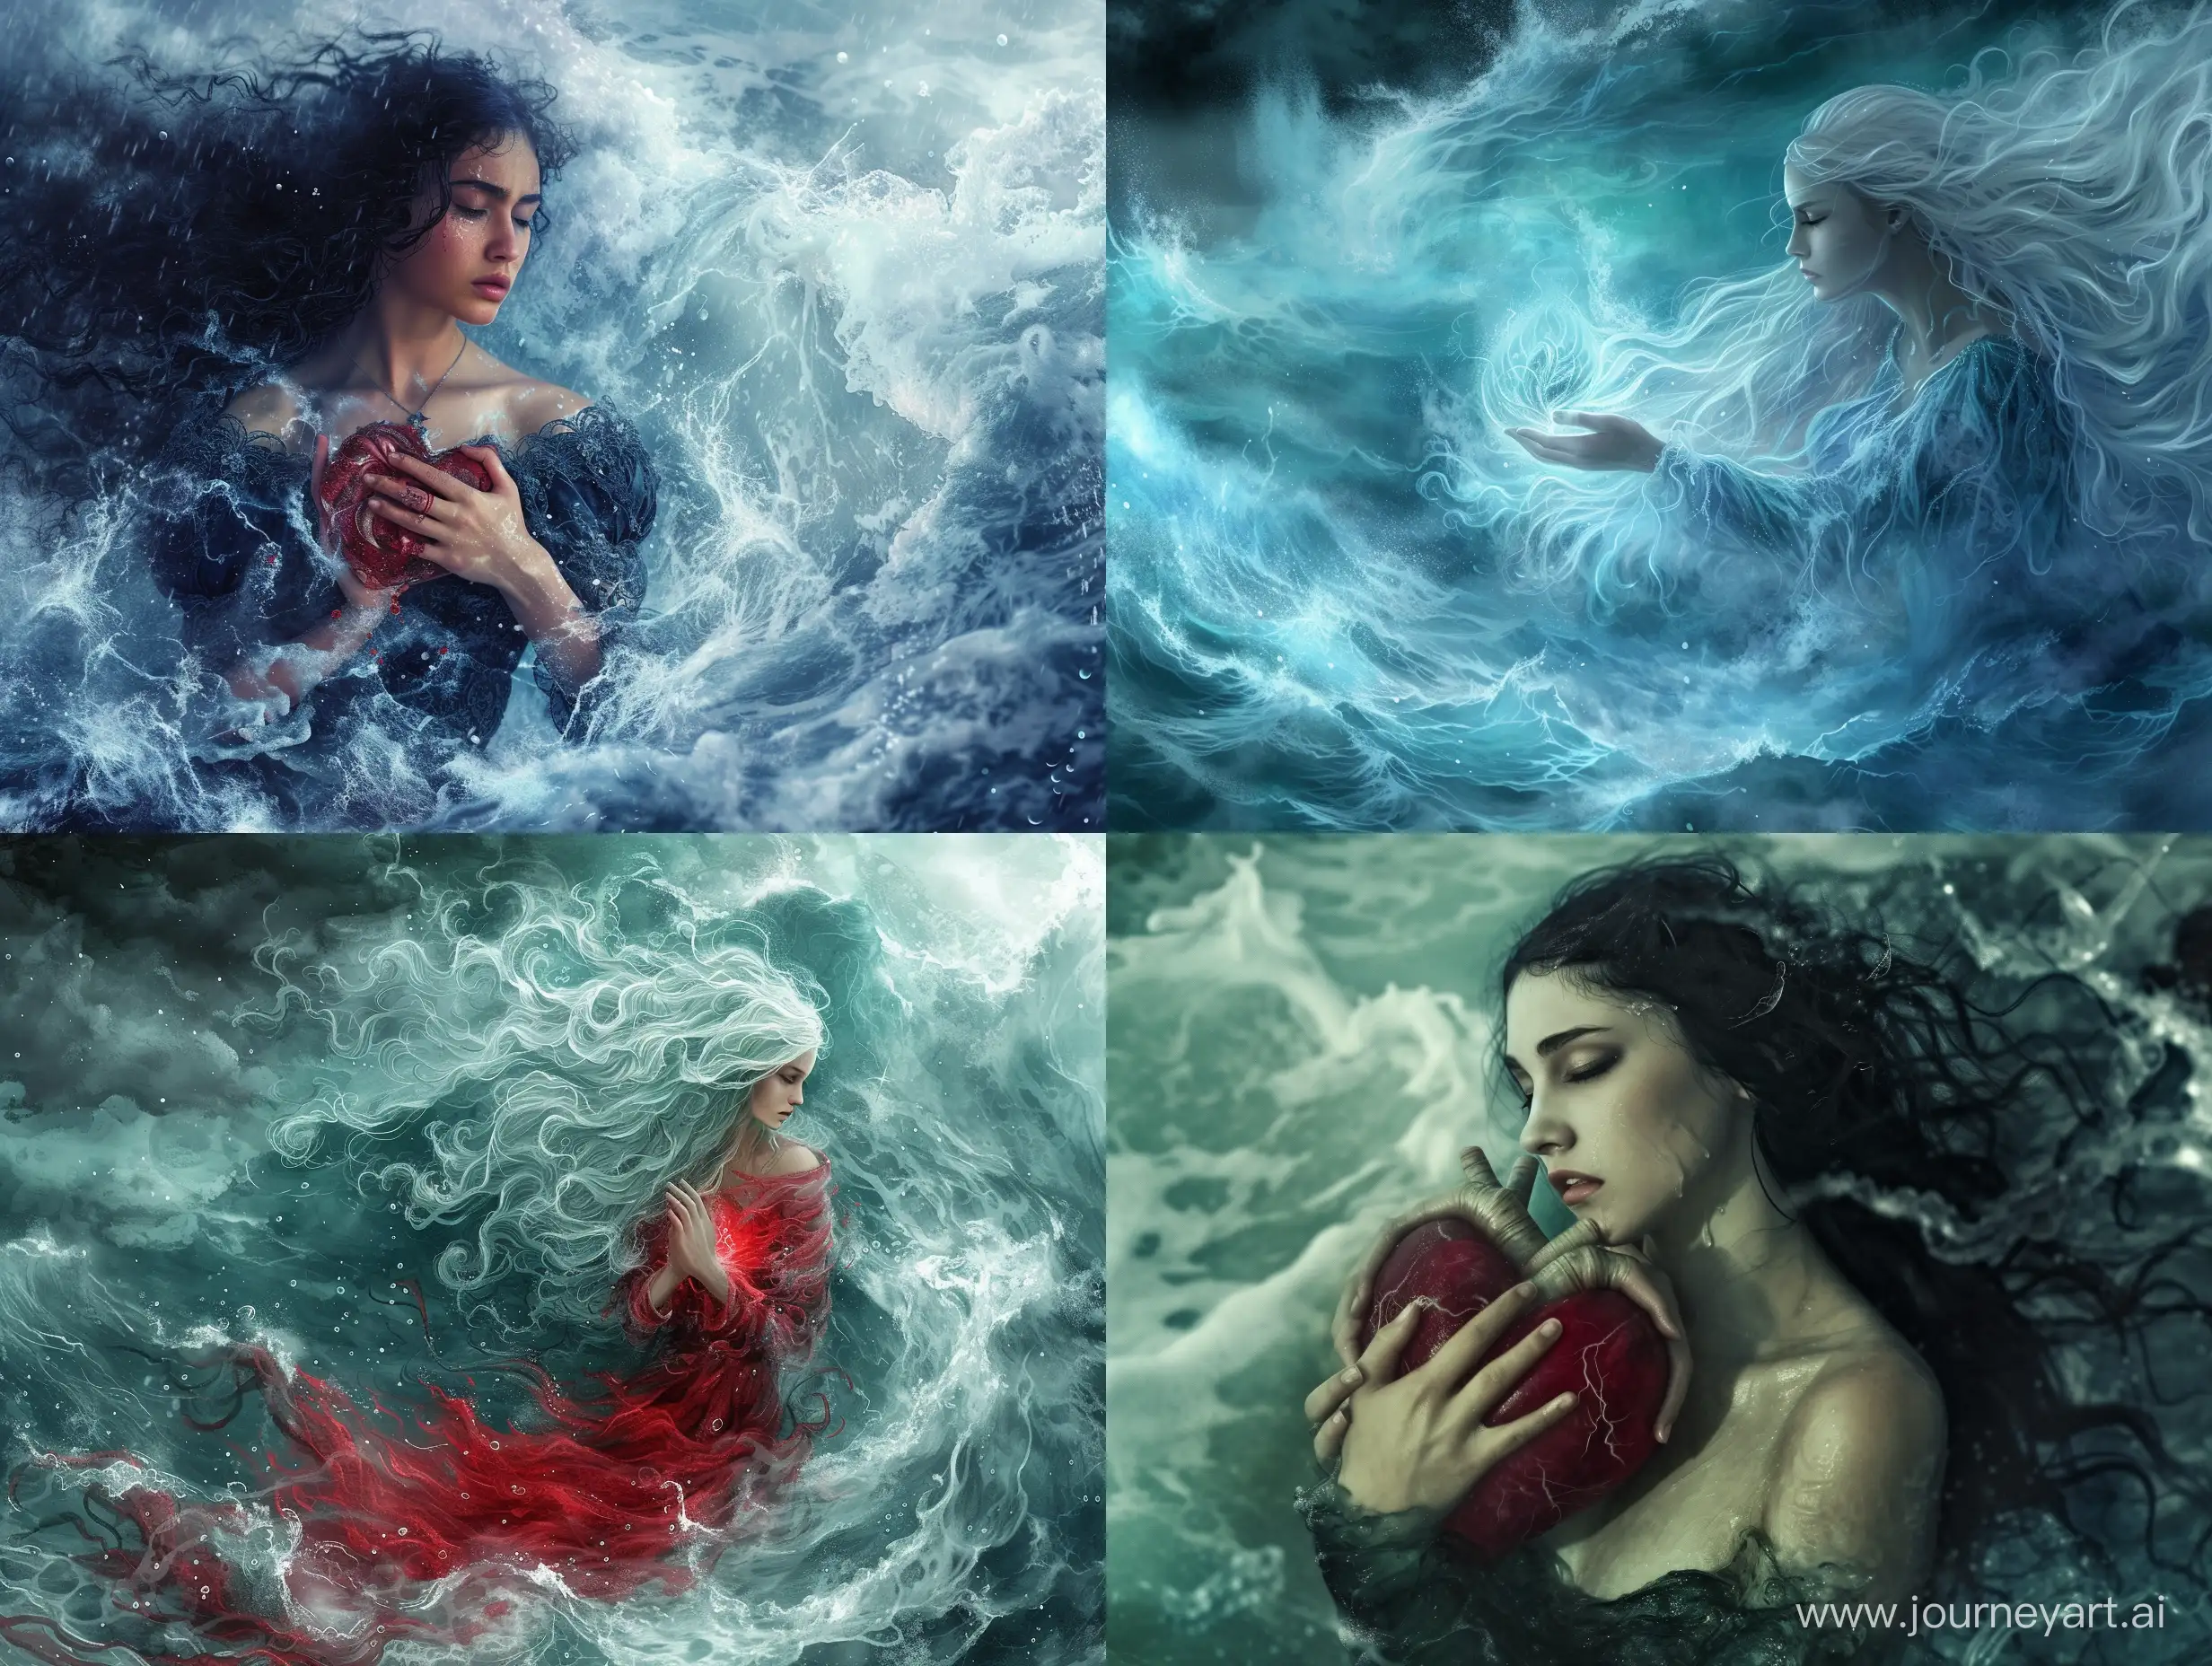 Богиня Гроз явилась и потребовала сердце Океана
Но сердце Океана у другой
Отвергнутая морем — её горе, её слёзы, её боль, её воля и любовь